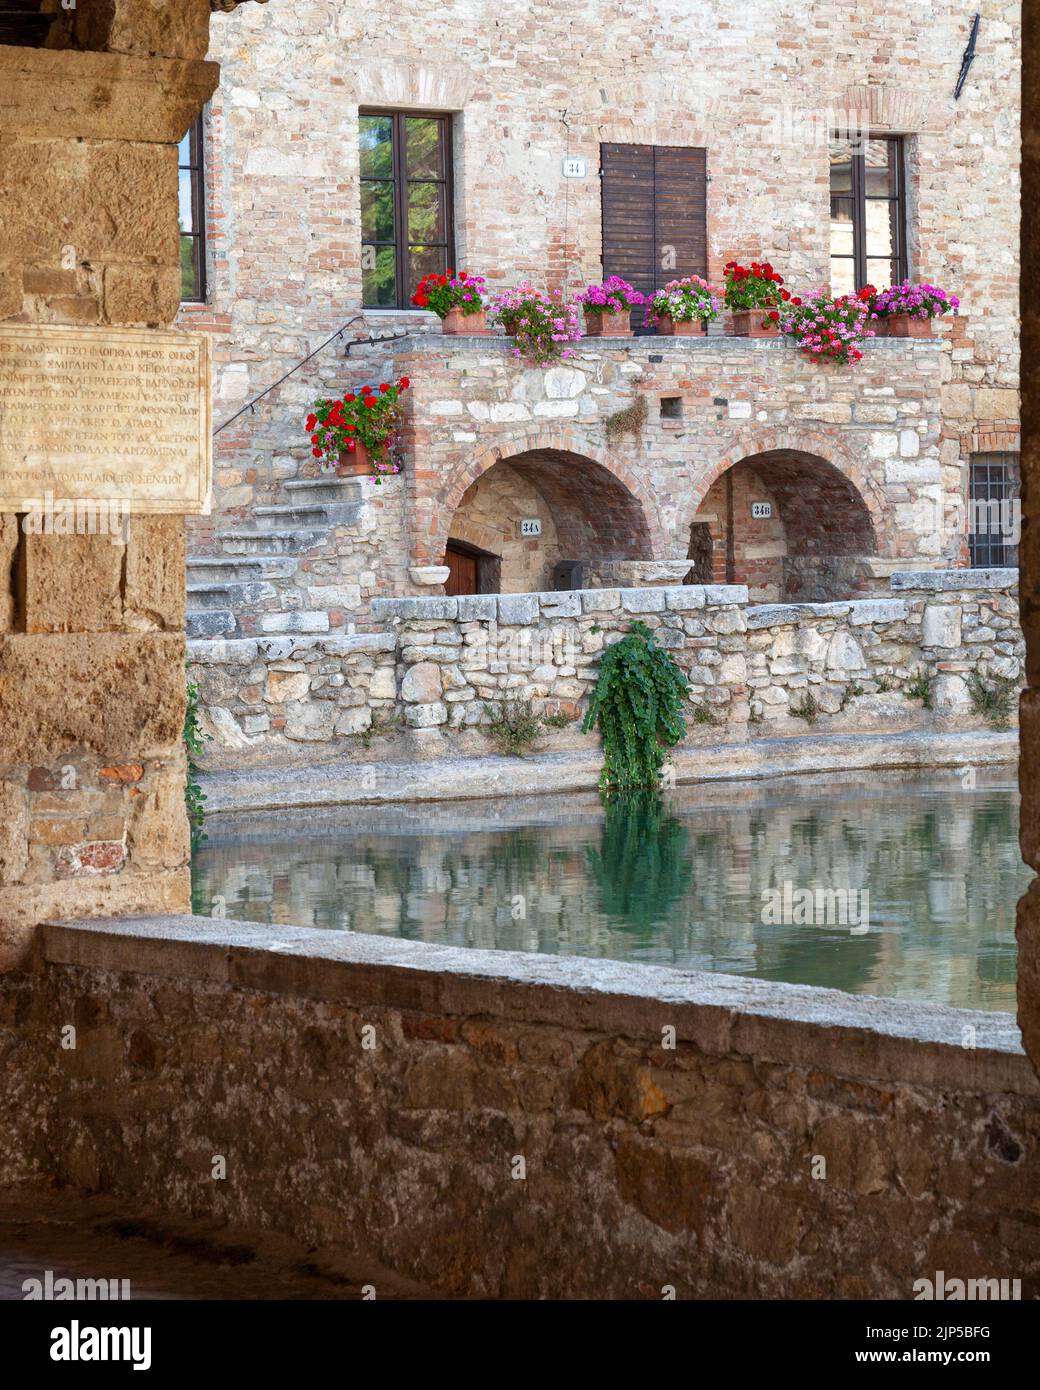 Baños termales y habitaciones en Bagno Vignoni, Toscana, Italia Foto de stock